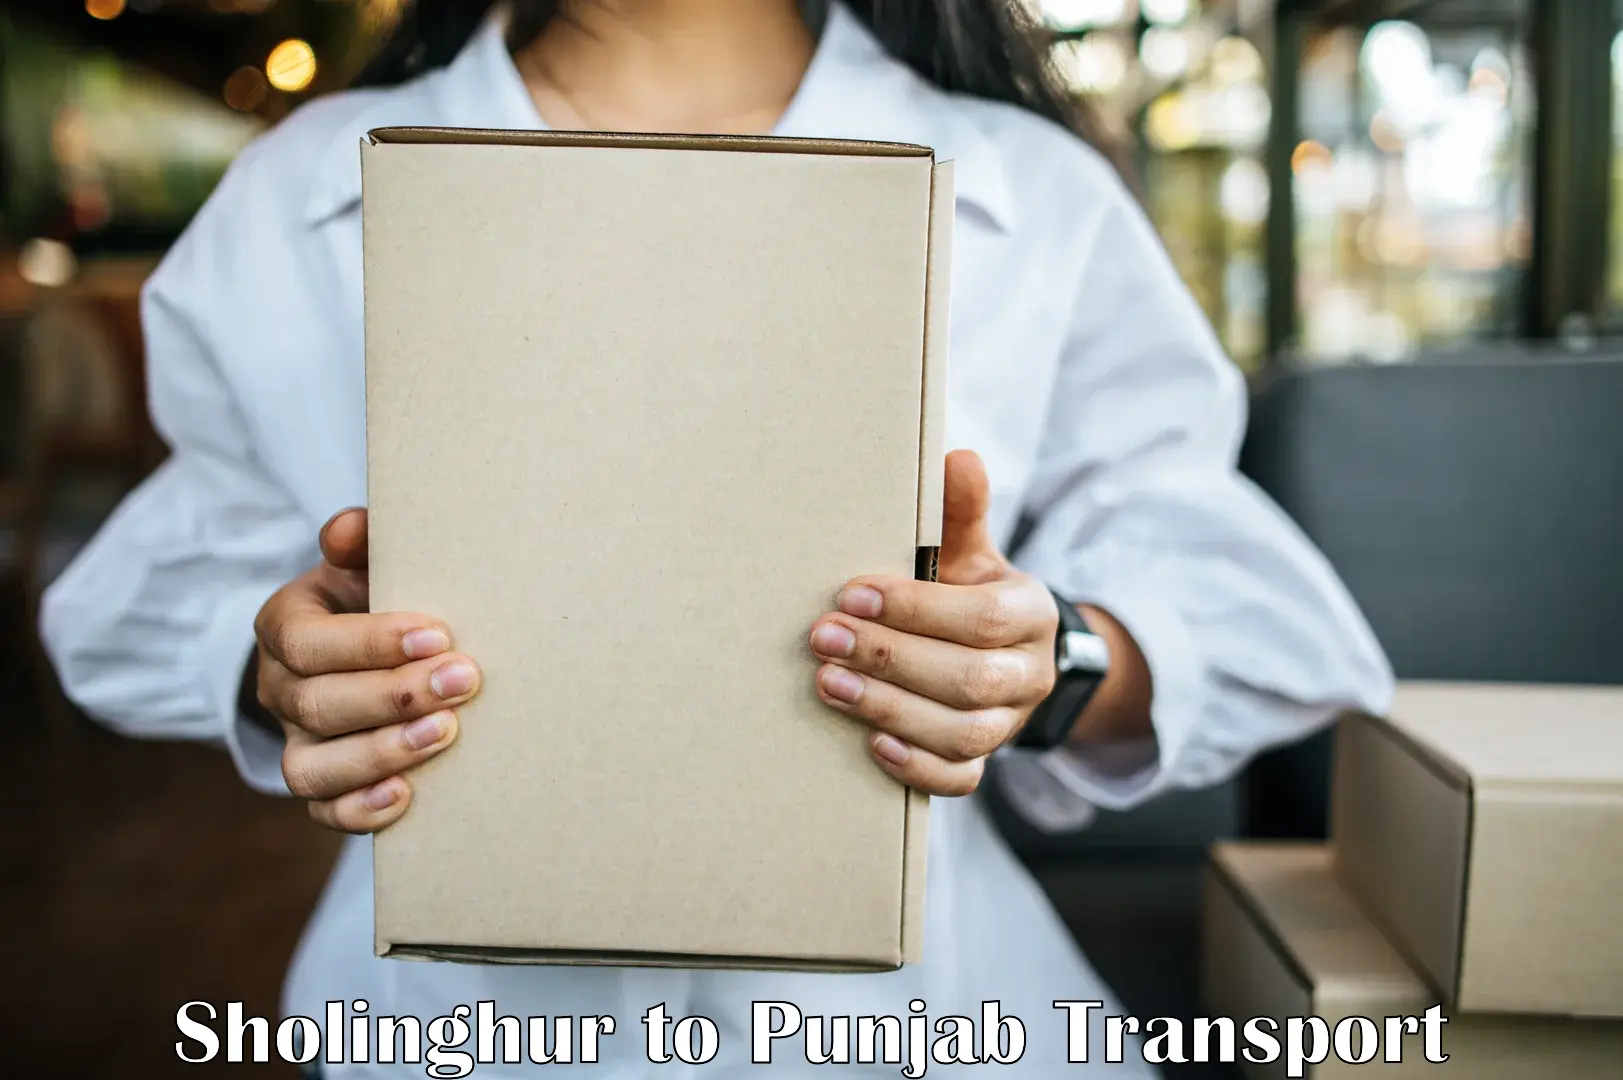 Vehicle transport services in Sholinghur to Punjab